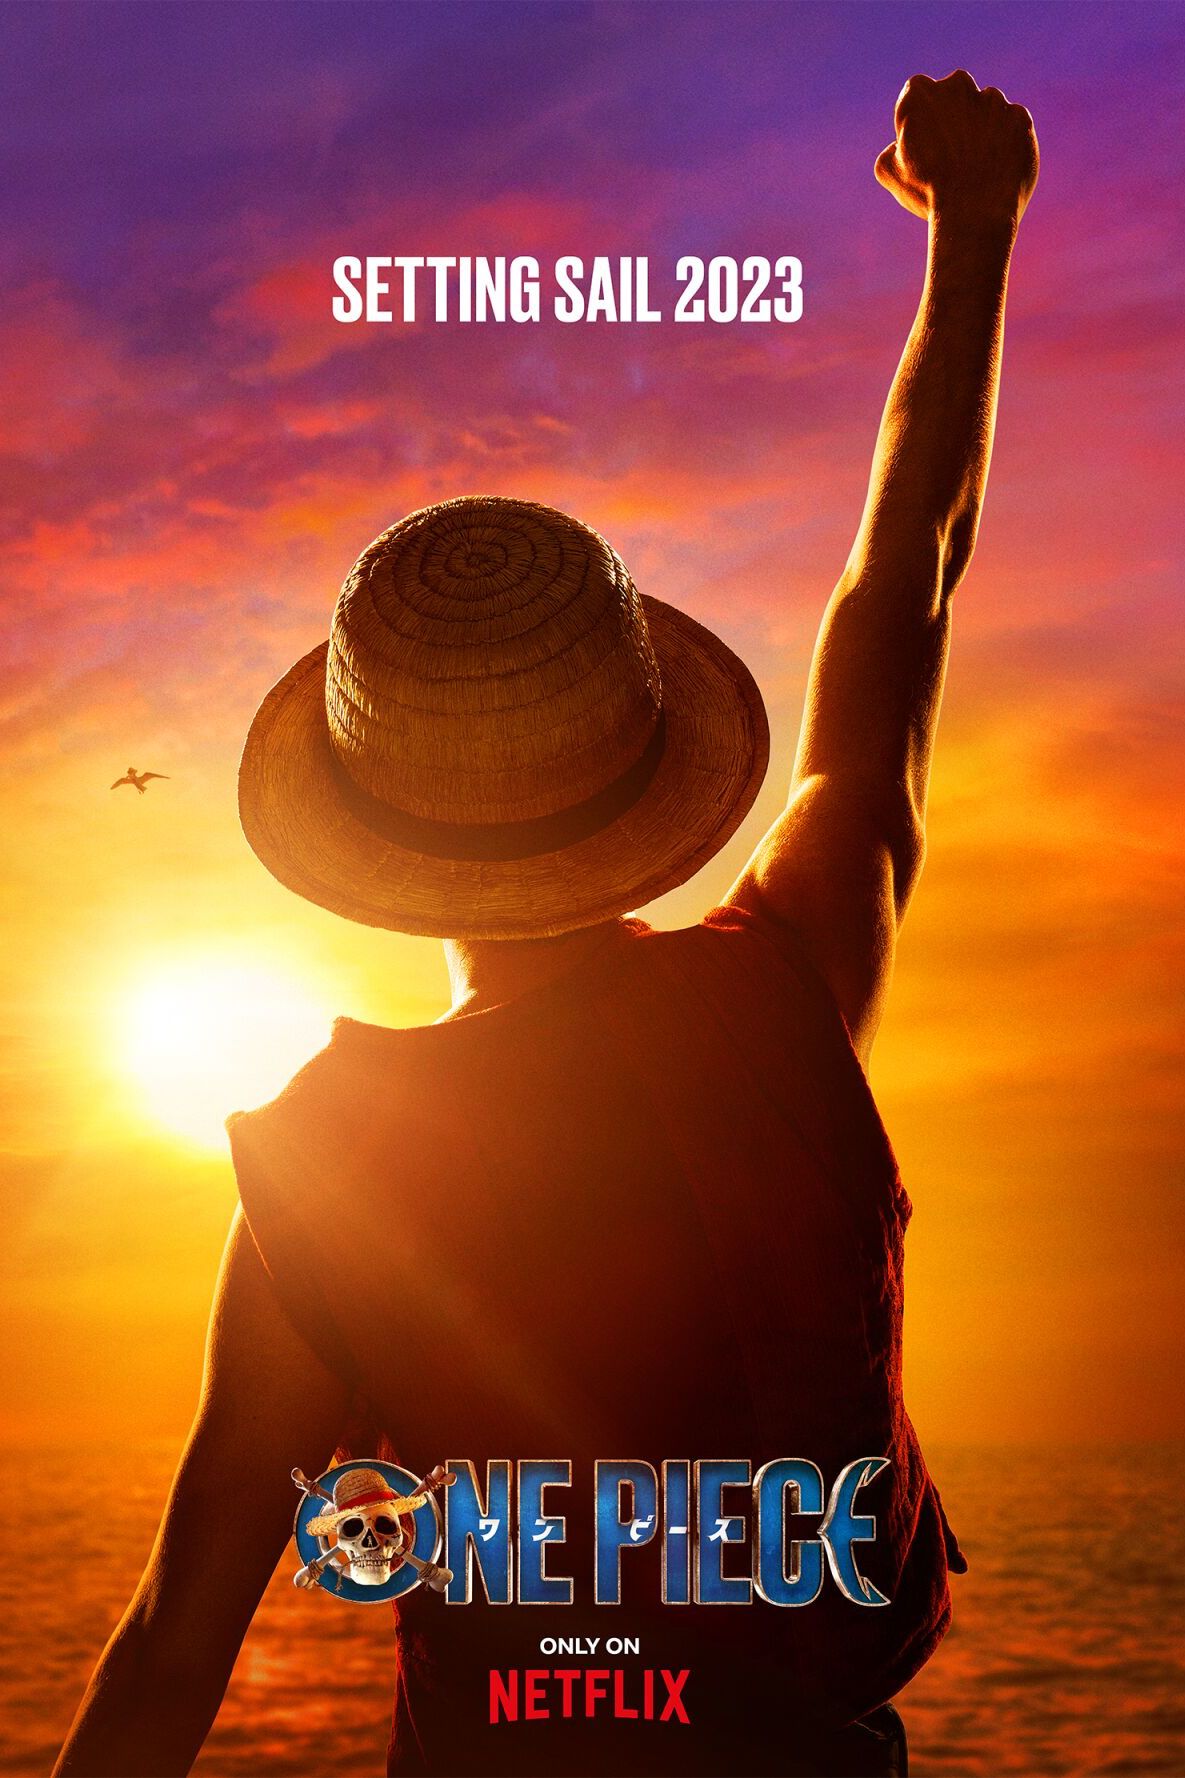 One Piece Netflix Teaser Poster